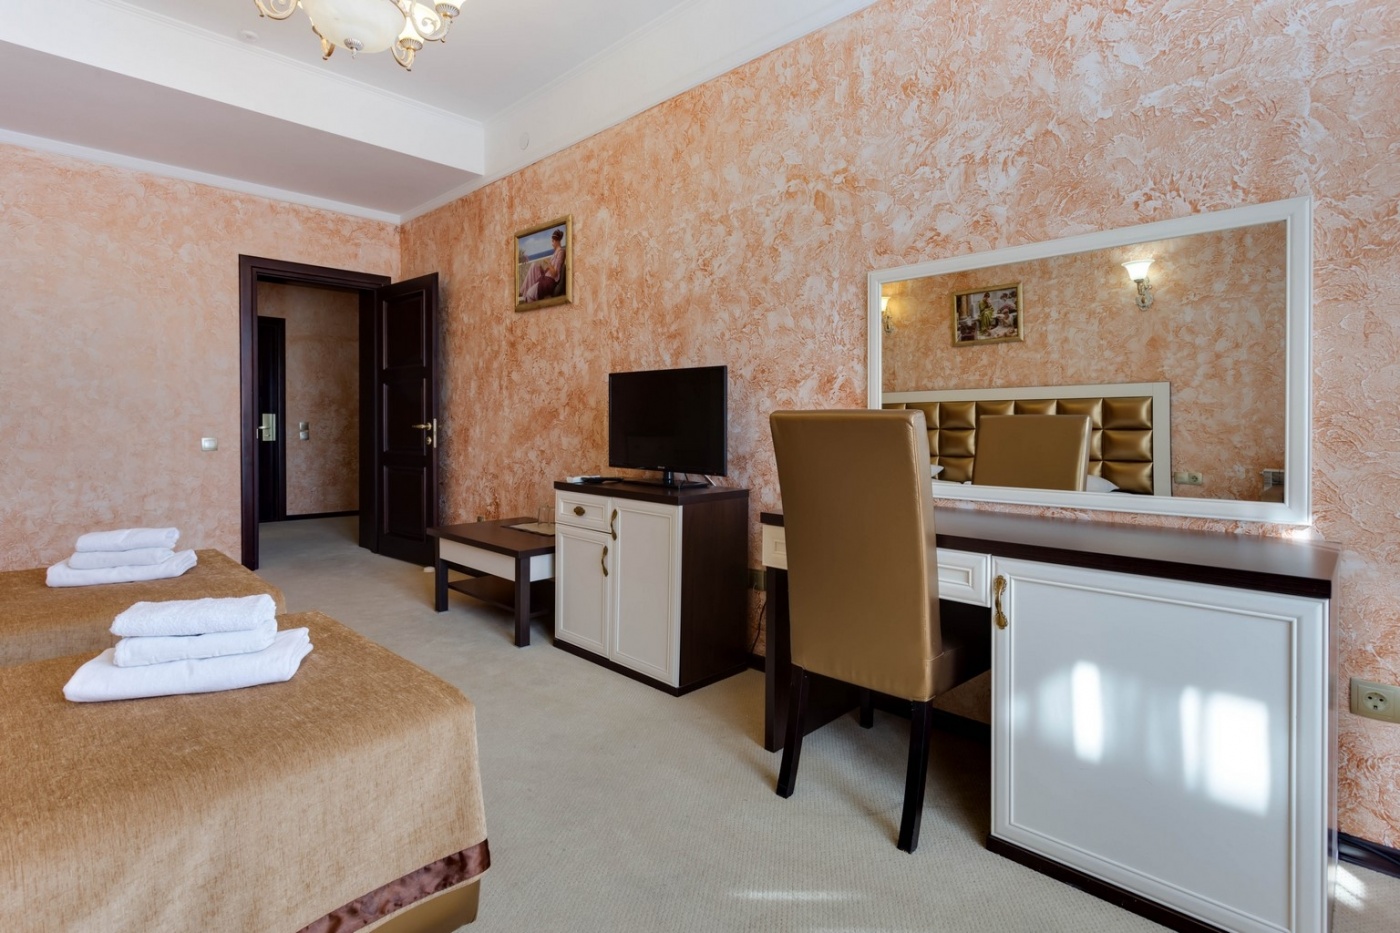  Отель «Царь Евпатор» Республика Крым Номер «Стандарт» 2-местный , фото 3